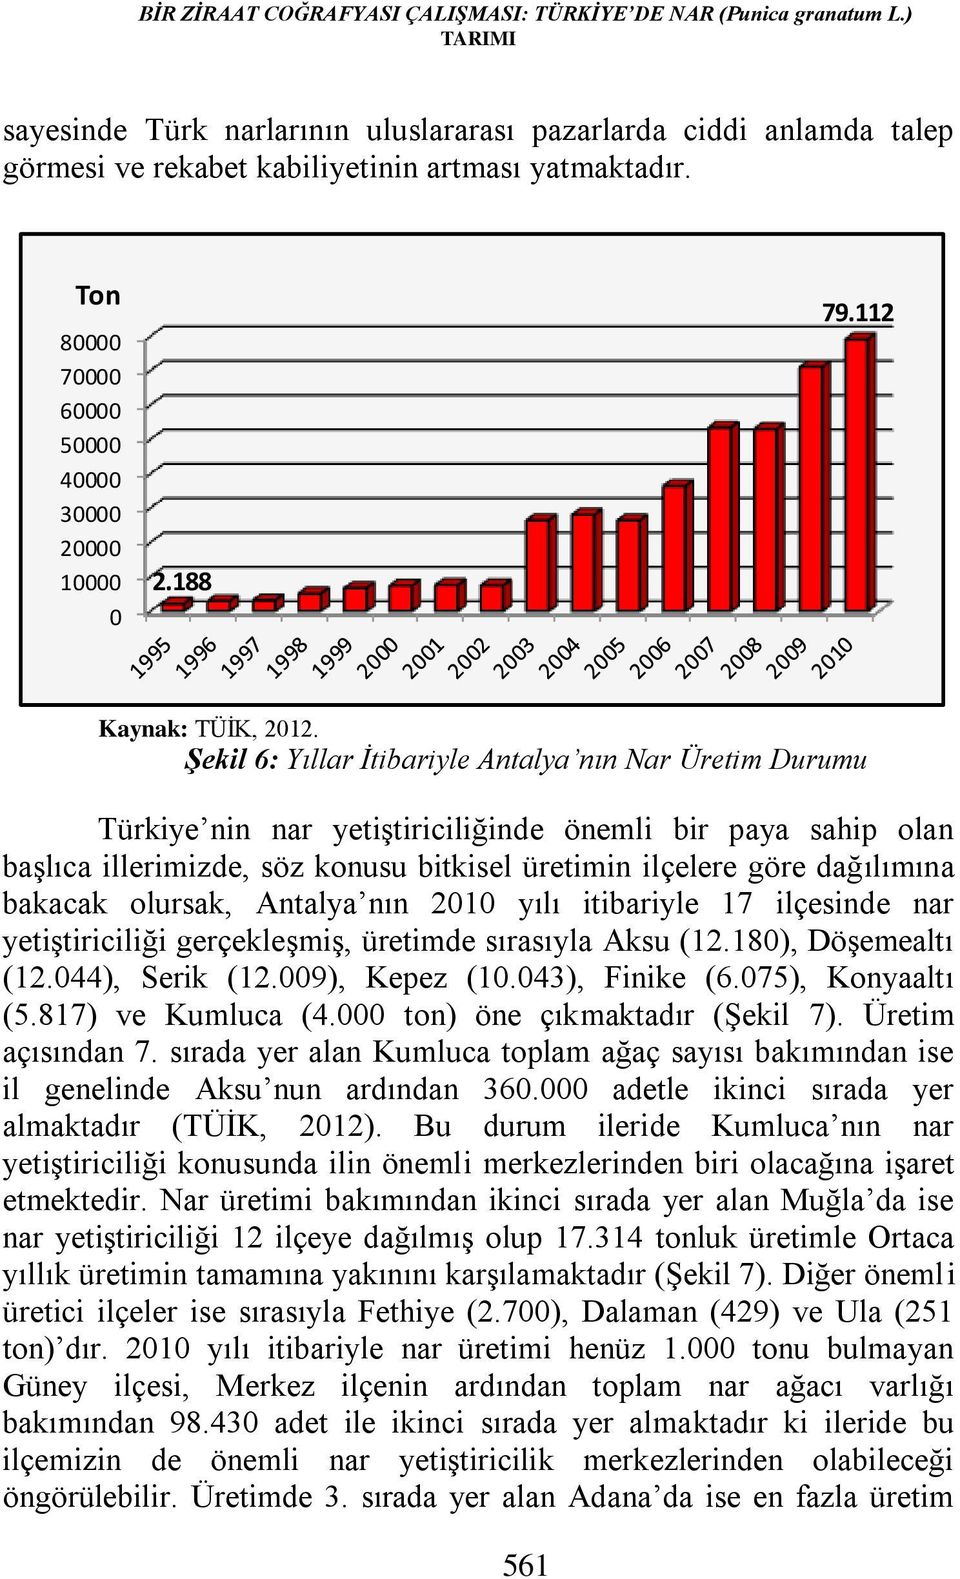 Şekil 6: Yıllar İtibariyle Antalya nın Nar Üretim Durumu Türkiye nin nar yetiştiriciliğinde önemli bir paya sahip olan başlıca illerimizde, söz konusu bitkisel üretimin ilçelere göre dağılımına